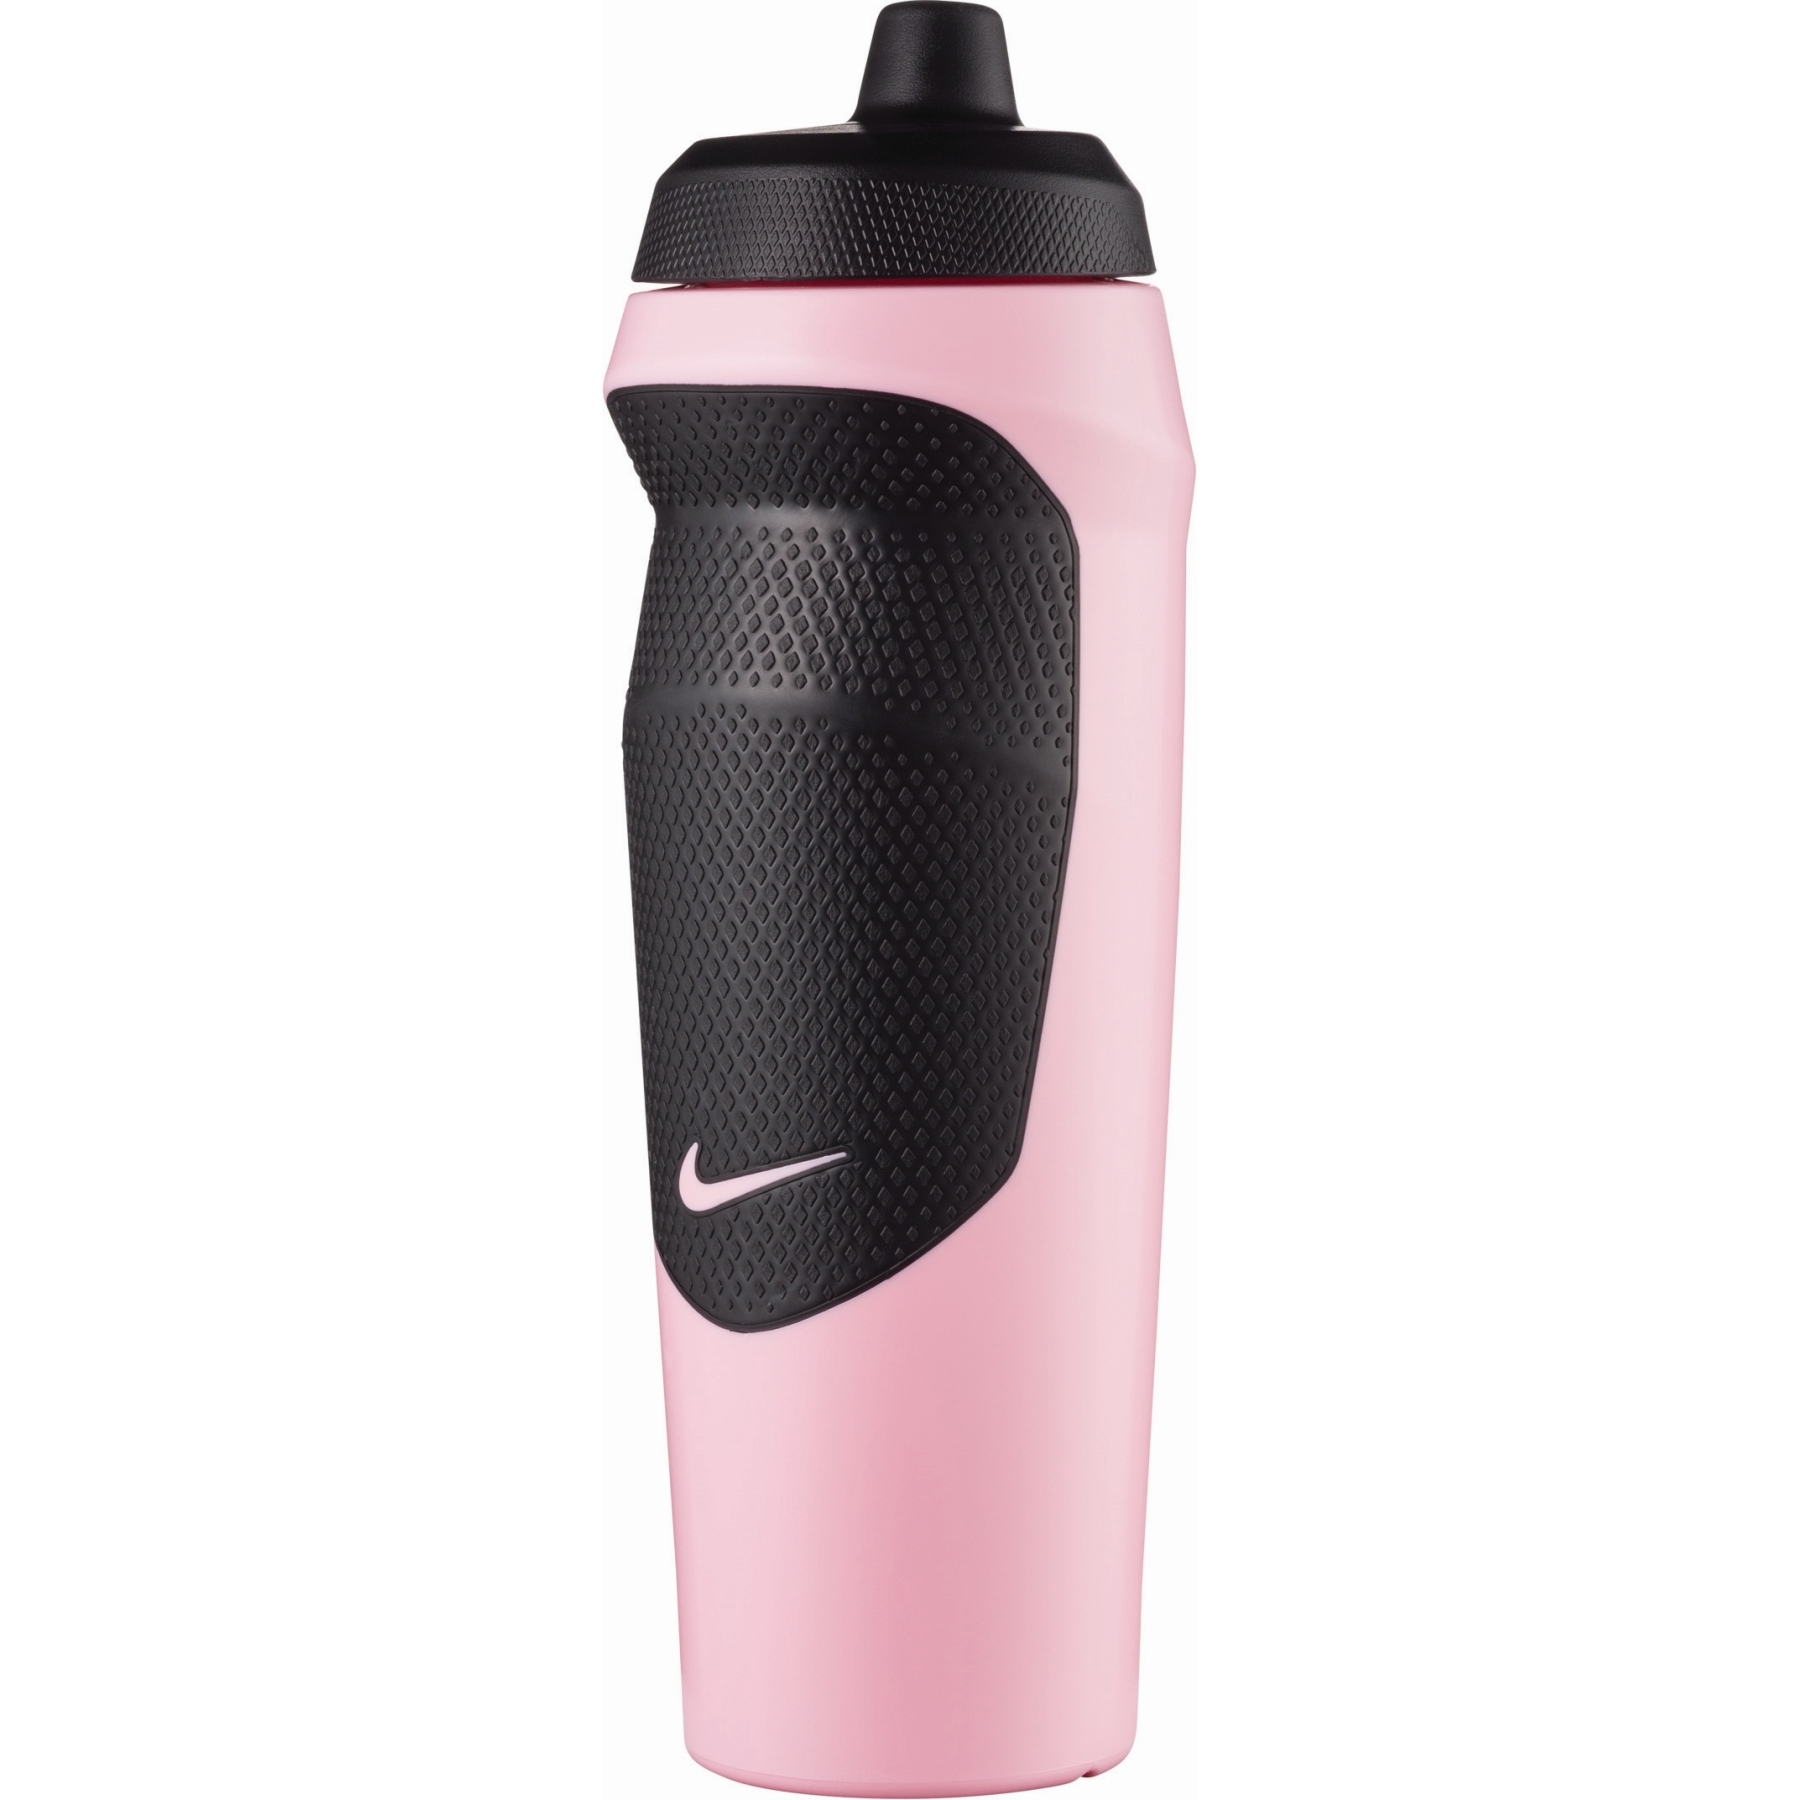 Produktbild von Nike Hypersport Trinkflasche 591ml - perfect pink/black/black/perfect pink